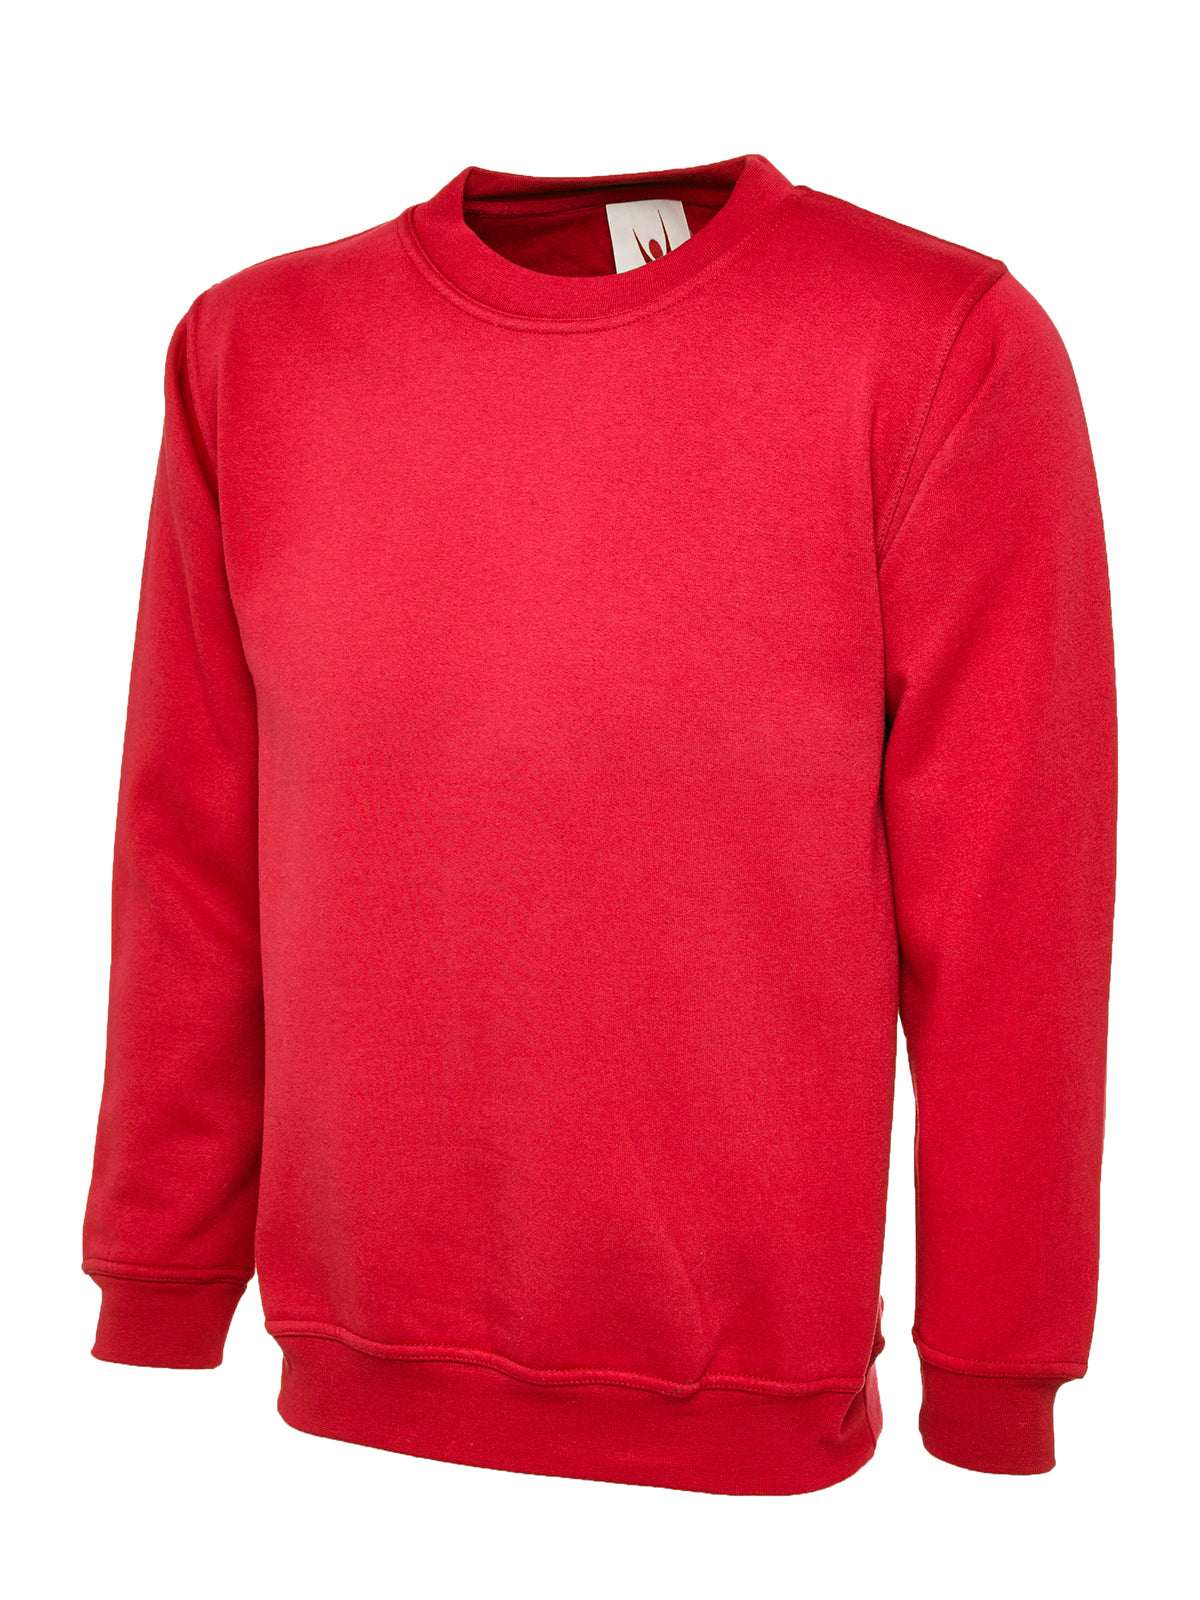 Uneek Ladies Deluxe Crew Neck Sweatshirt UC511 - Red 